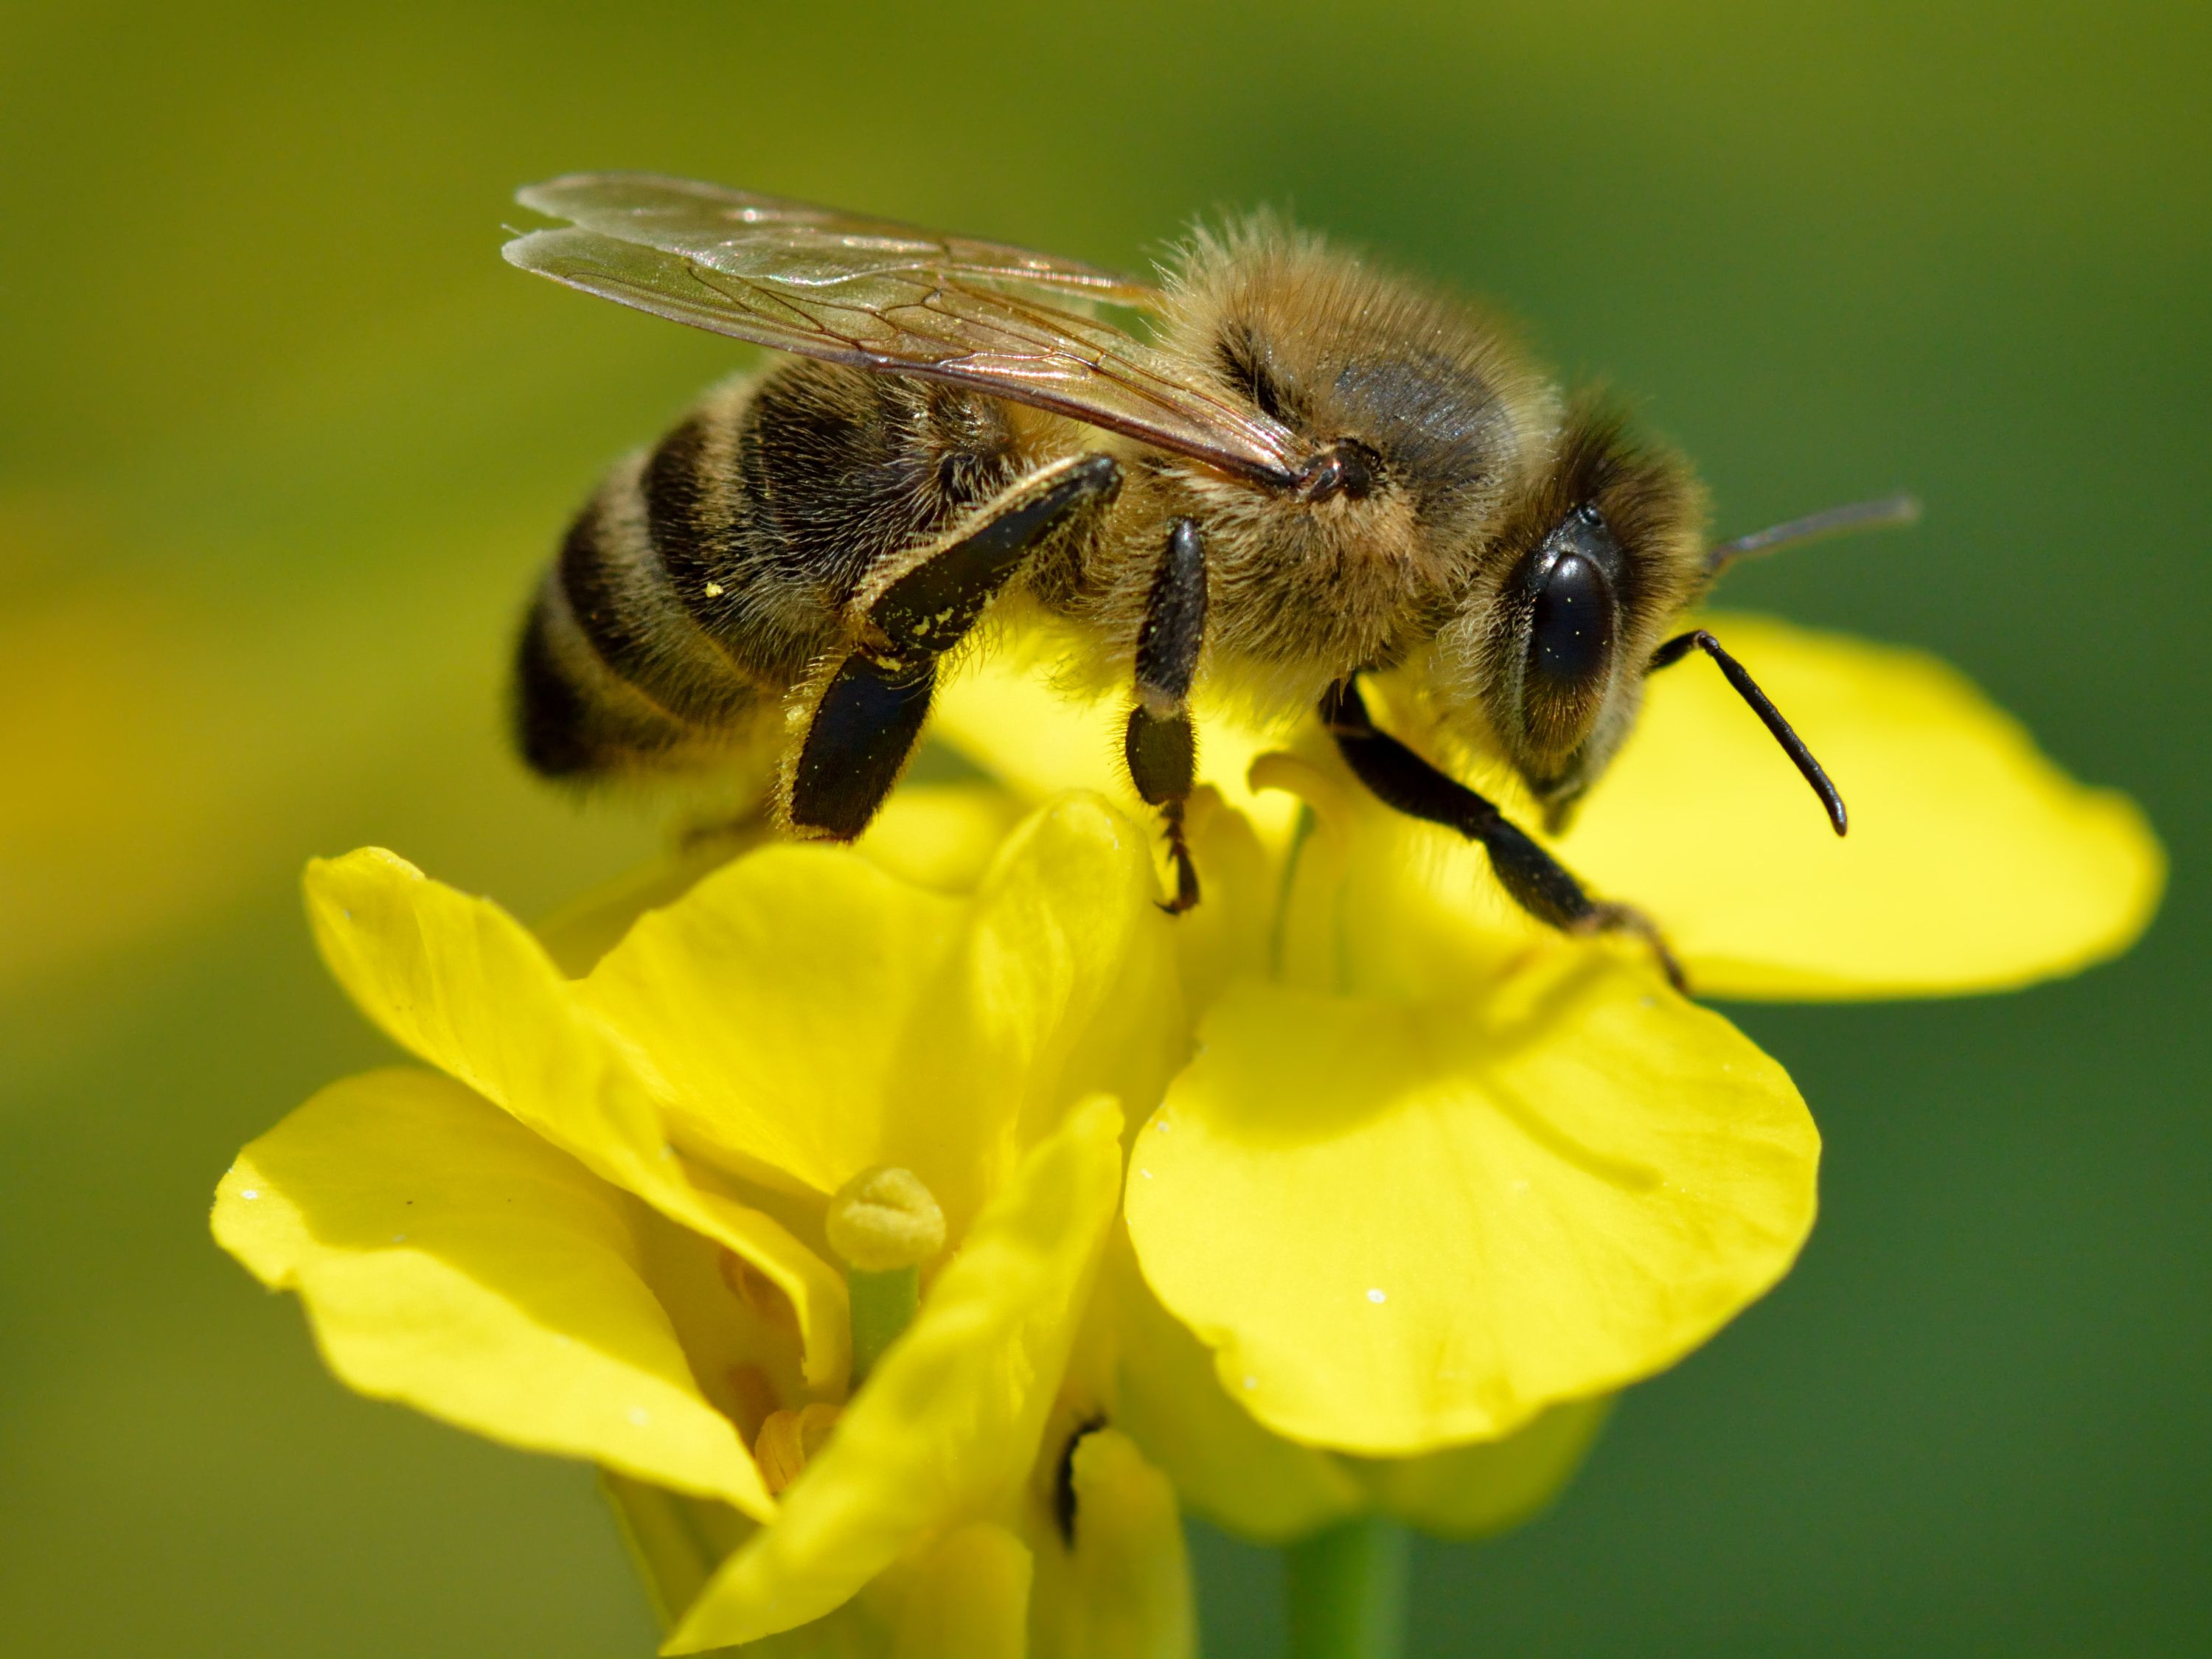 How to draw a bee  Dạy bé vẽ hình con ong vàng ngộ nghĩnh  6 bước cơ bản  vẽ con ong  YouTube